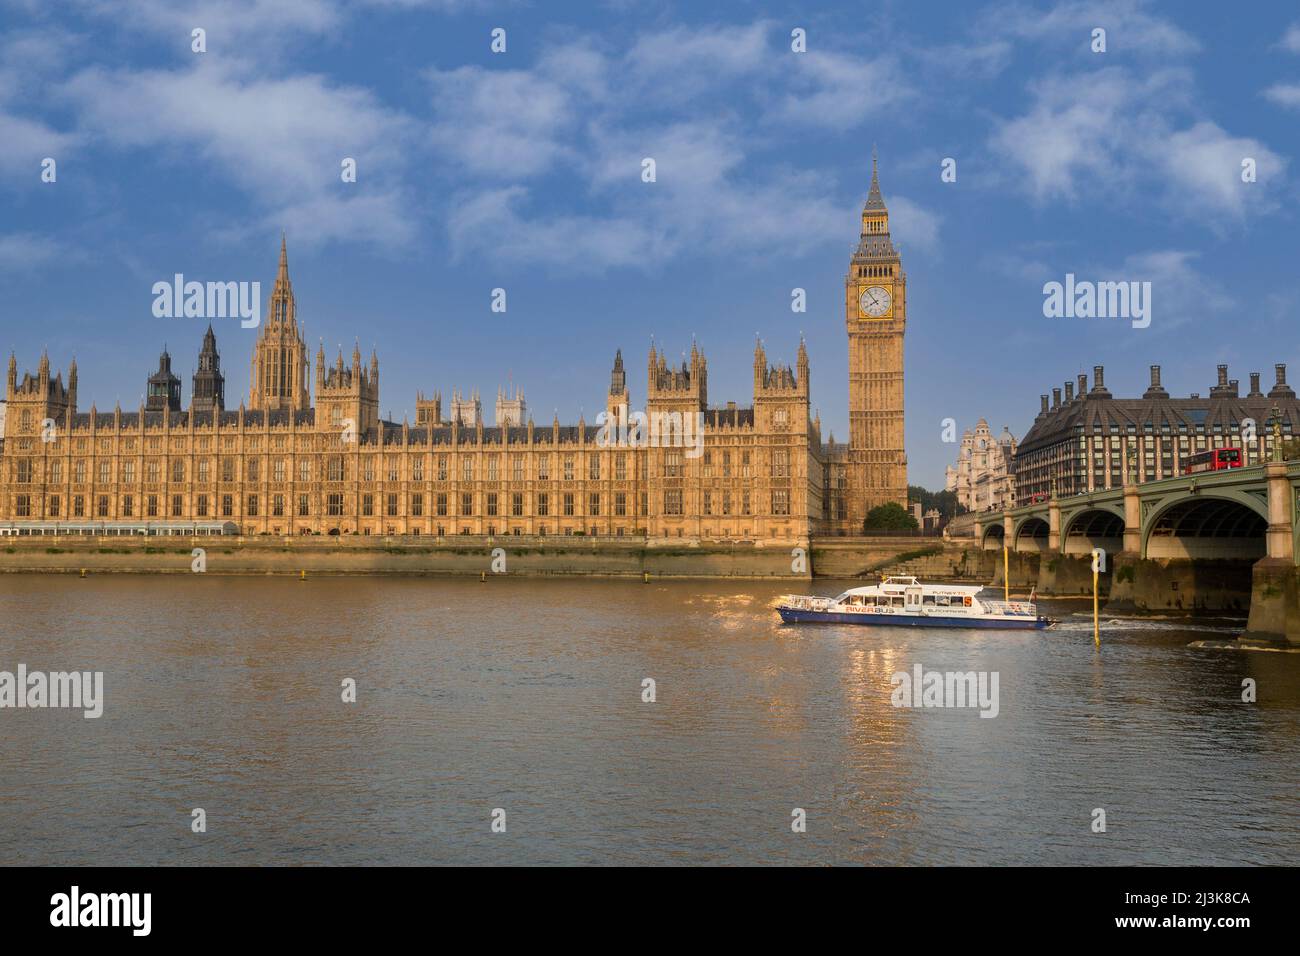 Großbritannien, England, London. Big Ben, Elizabeth Tower, Westminster Palace, Themse River, am frühen Morgen. Portcullis Parlamentsgebäude auf der rechten Seite. Stockfoto